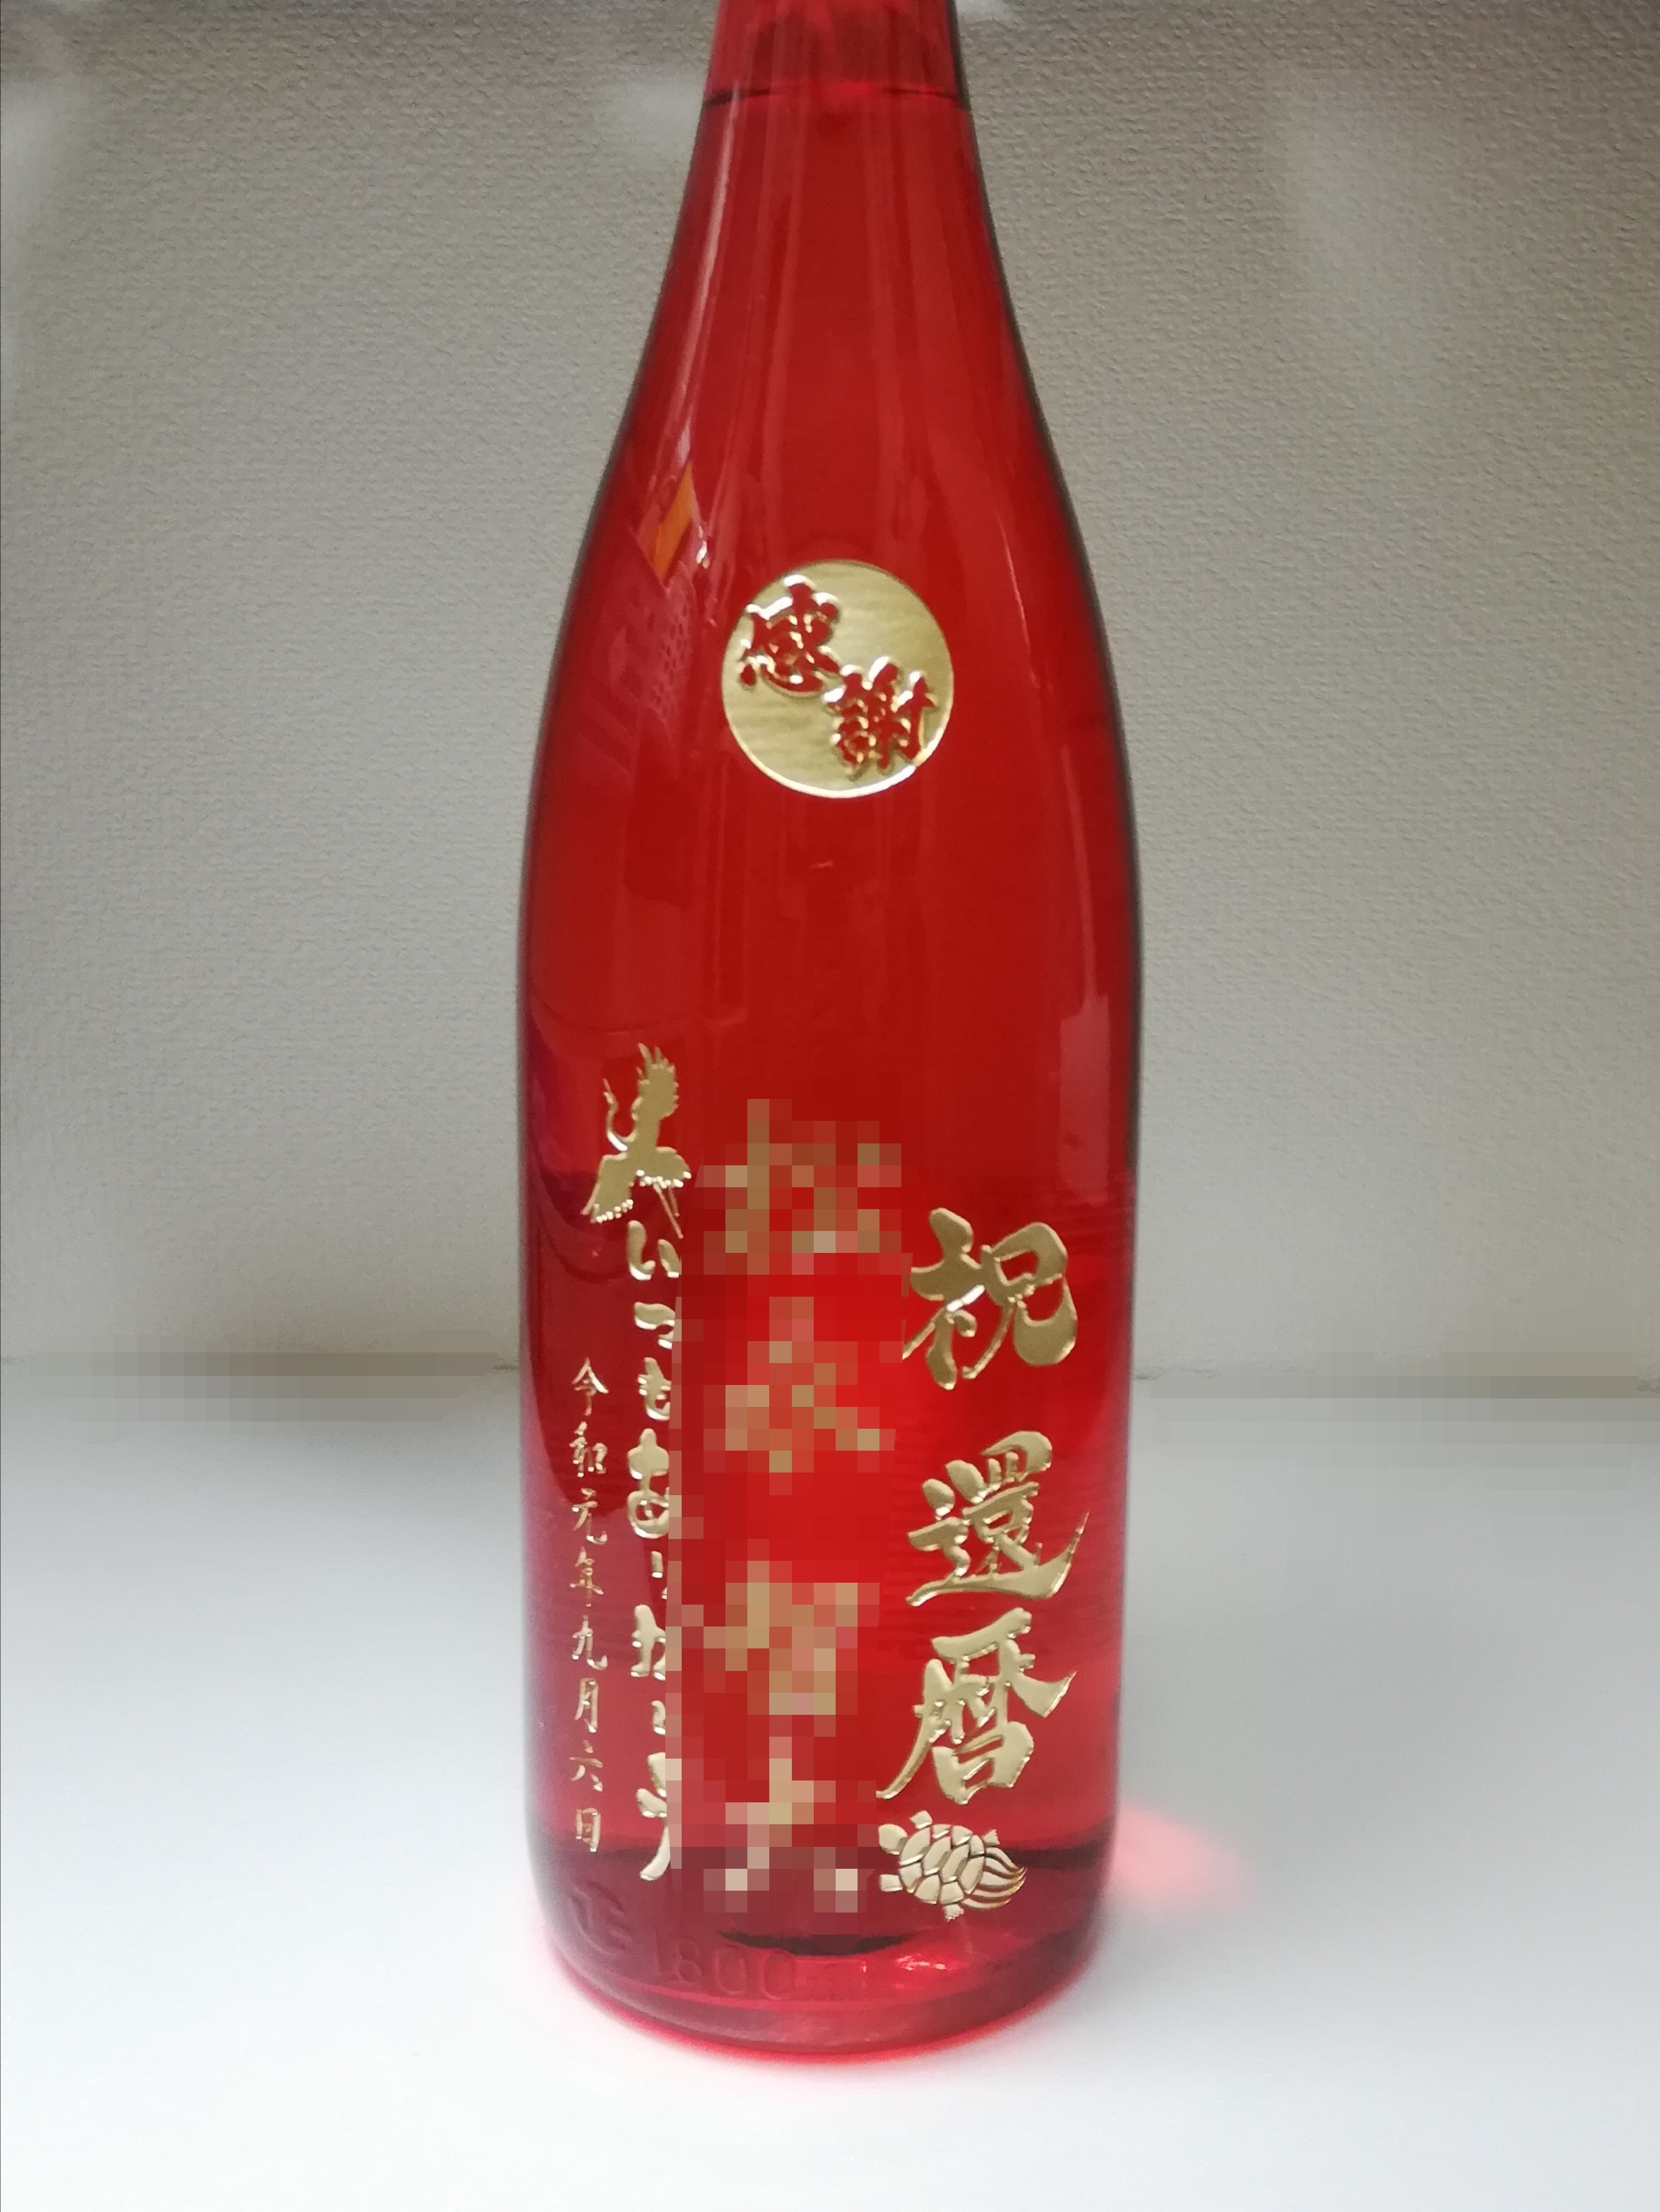 還暦祝いの名入れボトル❗赤いボトルでオリジナル彫刻❗